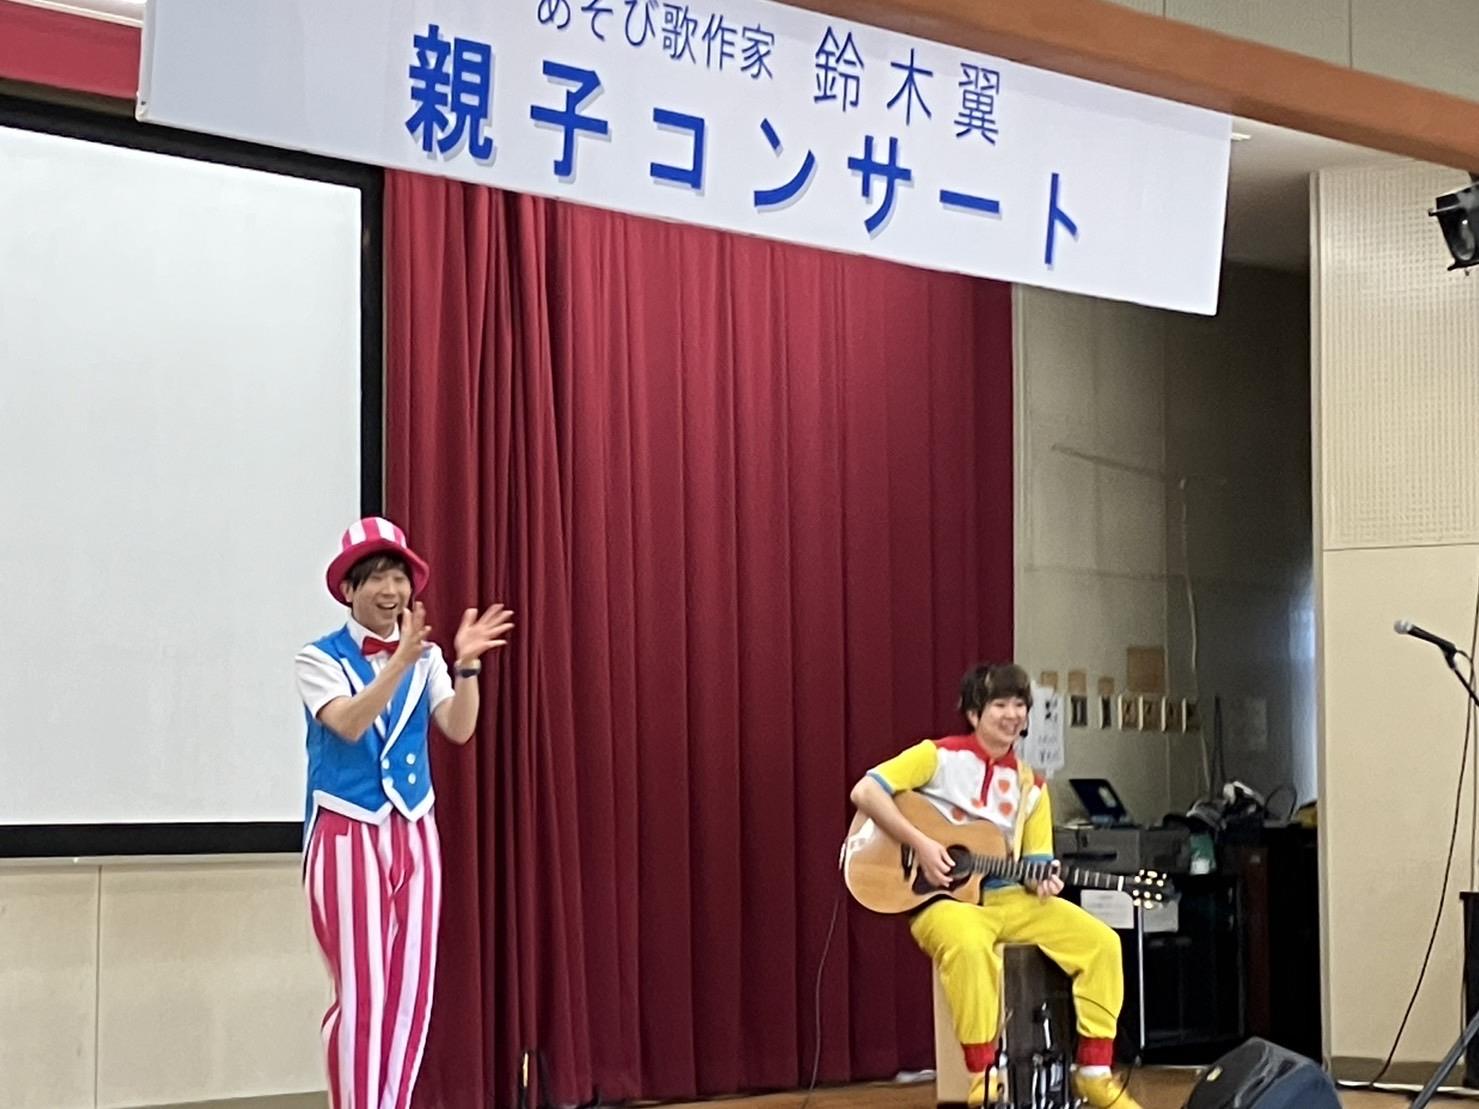 舞台上で遊び歌作家鈴木翼さんがピンクと白のストライブプの防止とズボンに水色のベストに赤い蝶ネクタイをして手拍子しながら歌いその隣で黄色い服を着た男性が座ってギターを弾きながら伴奏する様子。